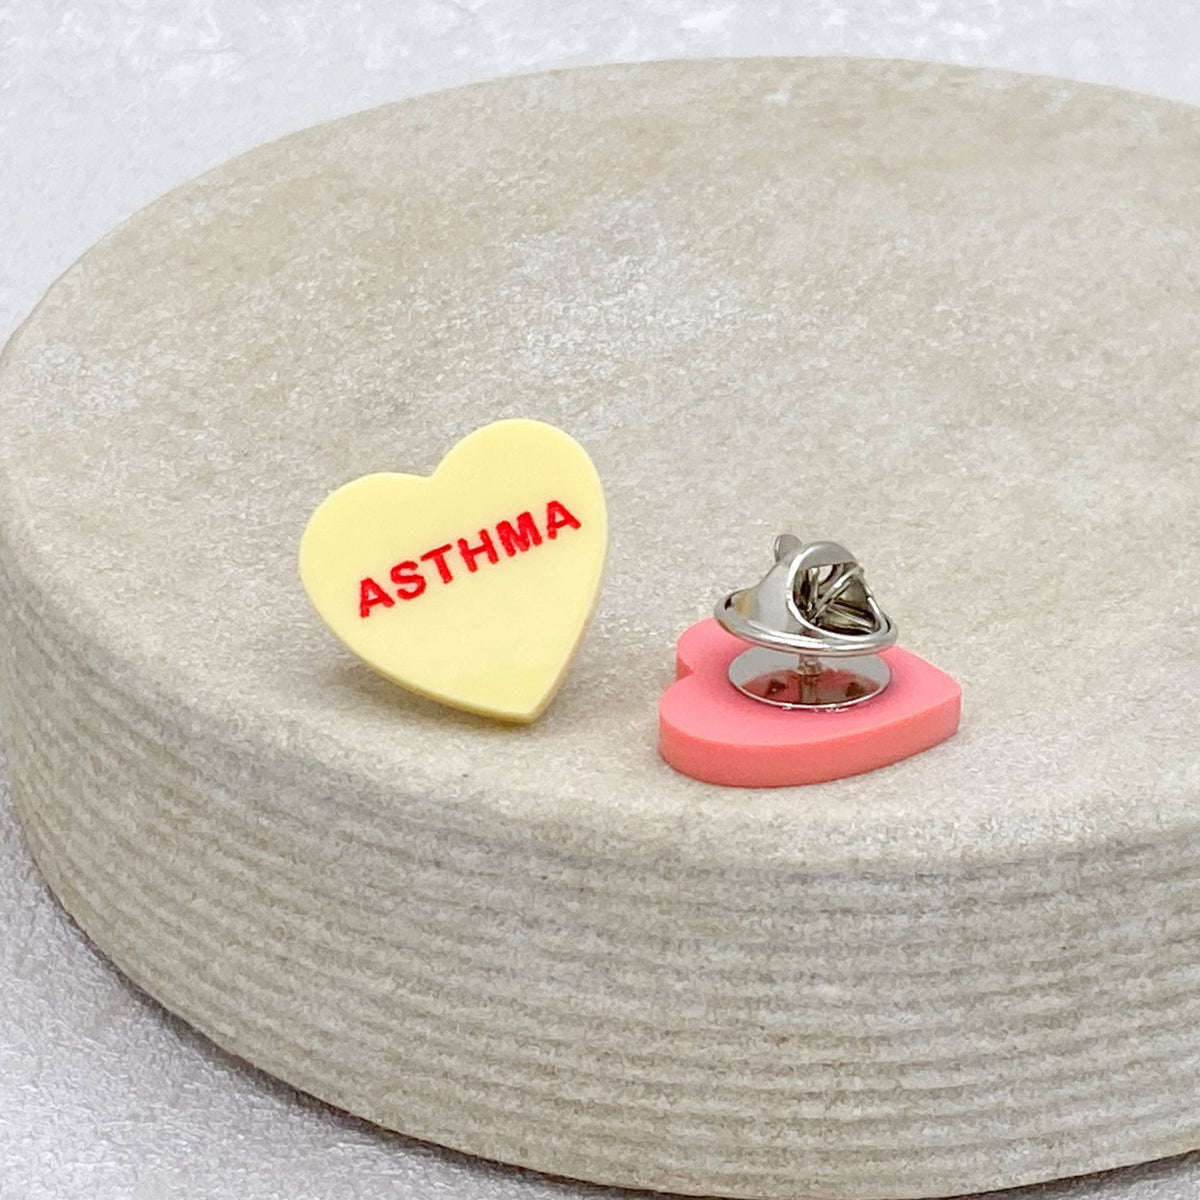 asthmatic awareness heart pin badge uk